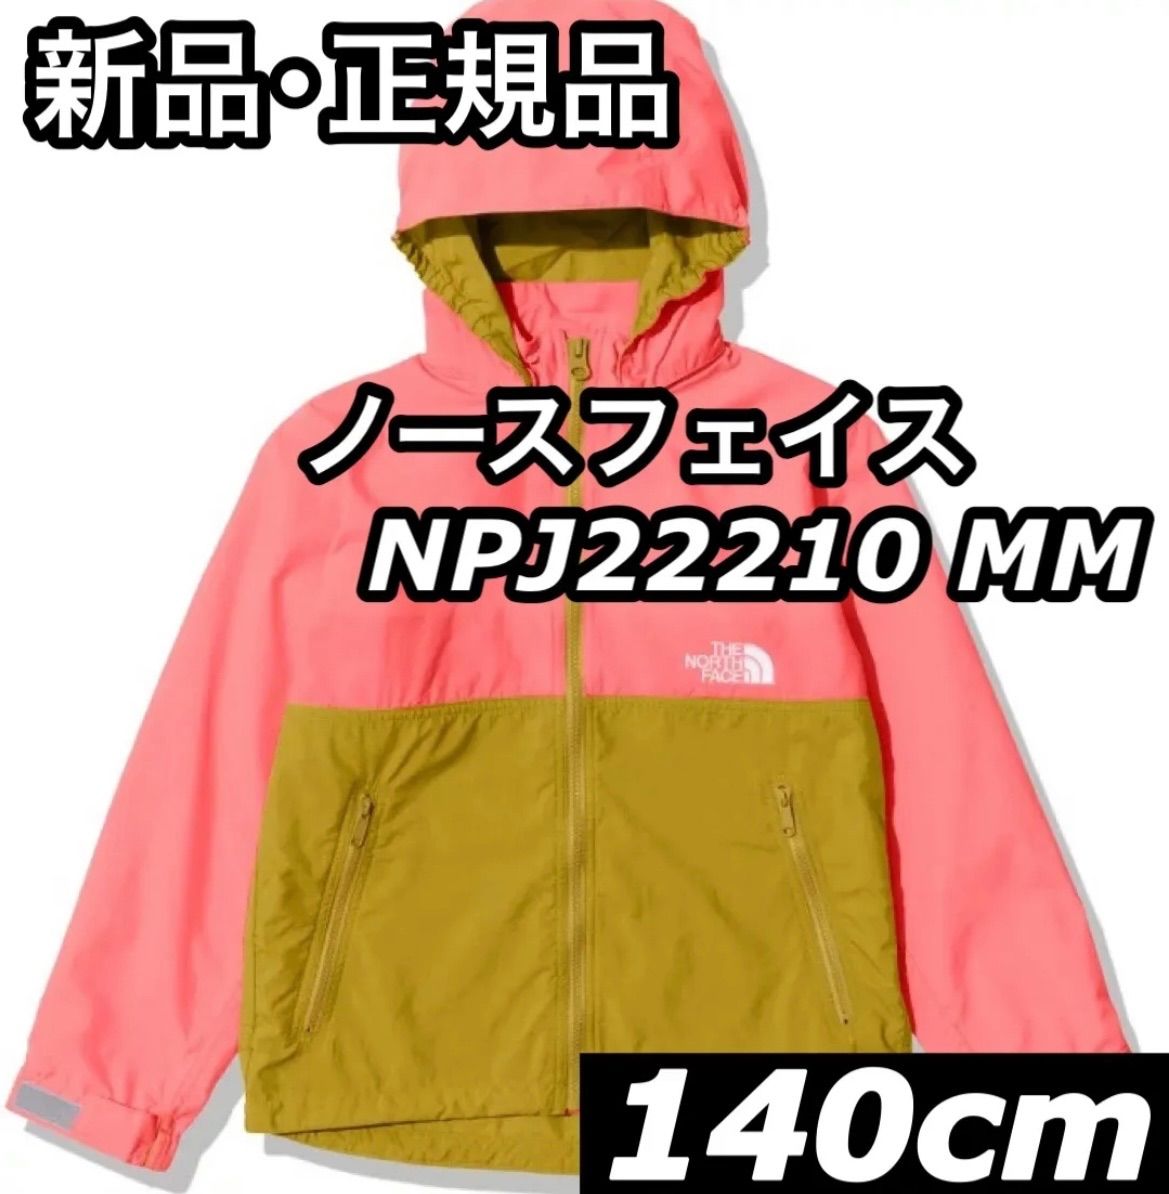 新品 ノースフェイス キッズ ジャケット コート 140cm - キッズ服